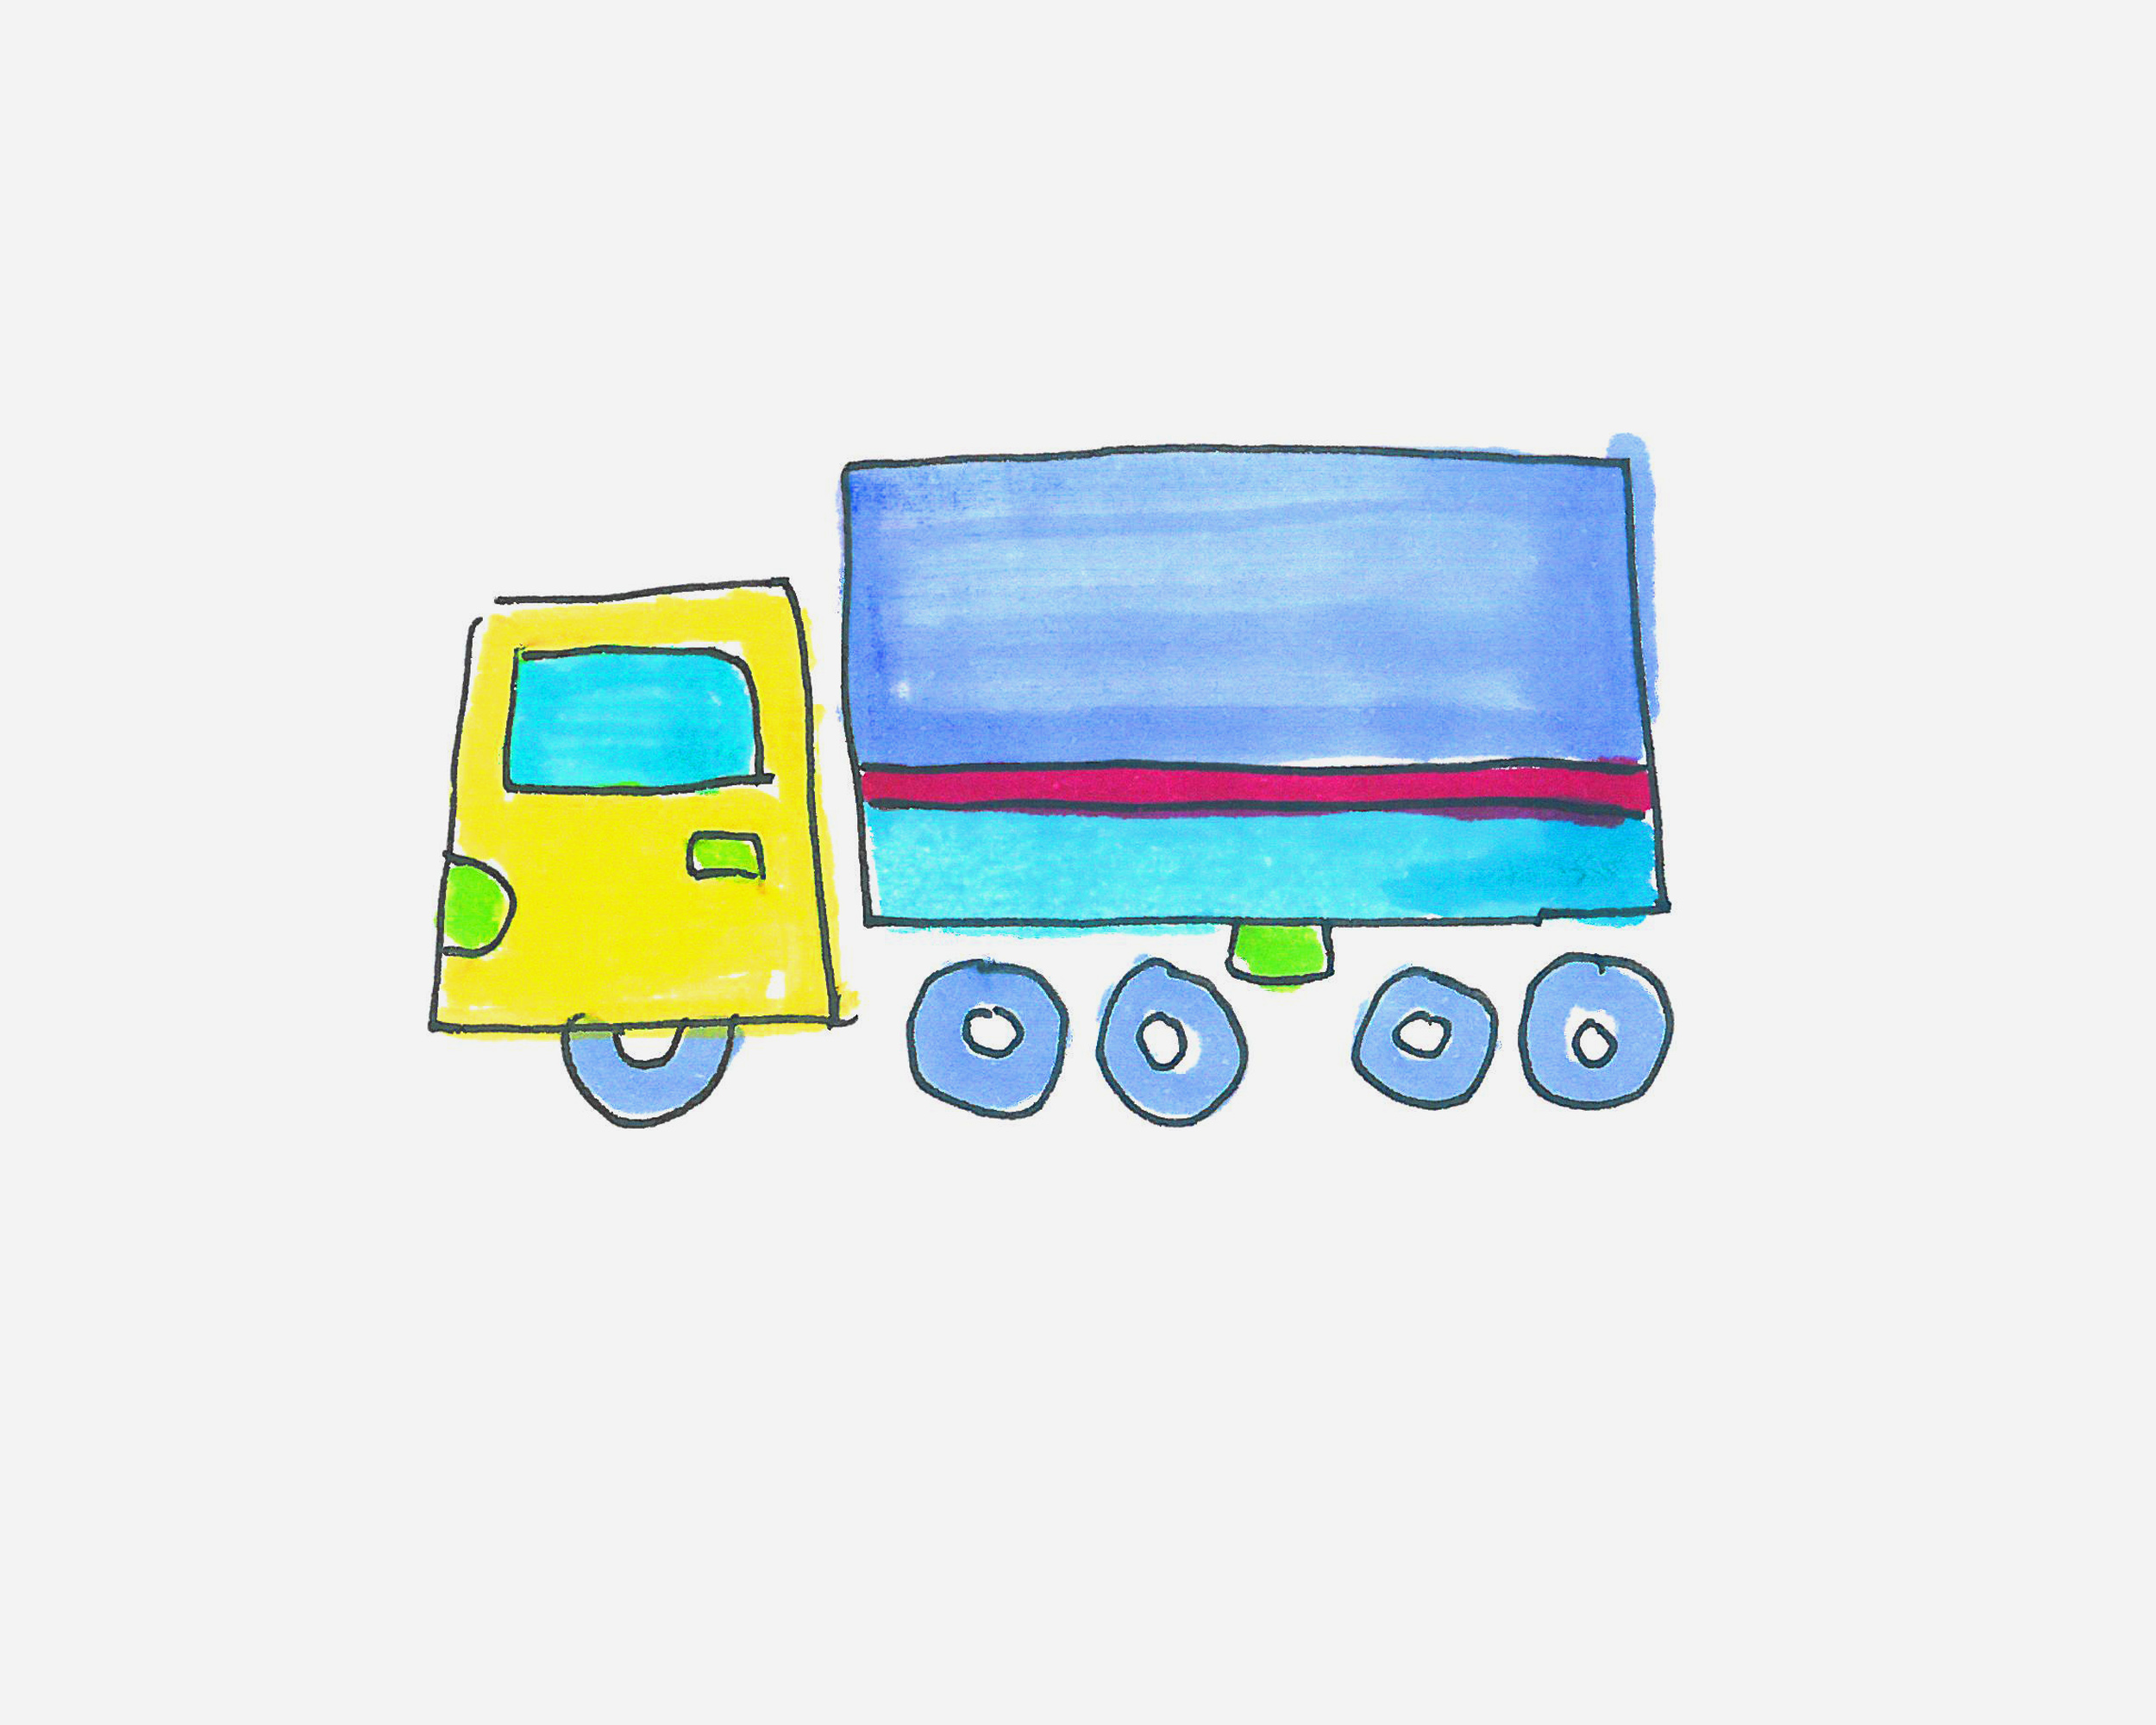 少儿简单漂亮儿童画 趣味简笔画货车怎么画图解教程 咿咿呀呀儿童手工网